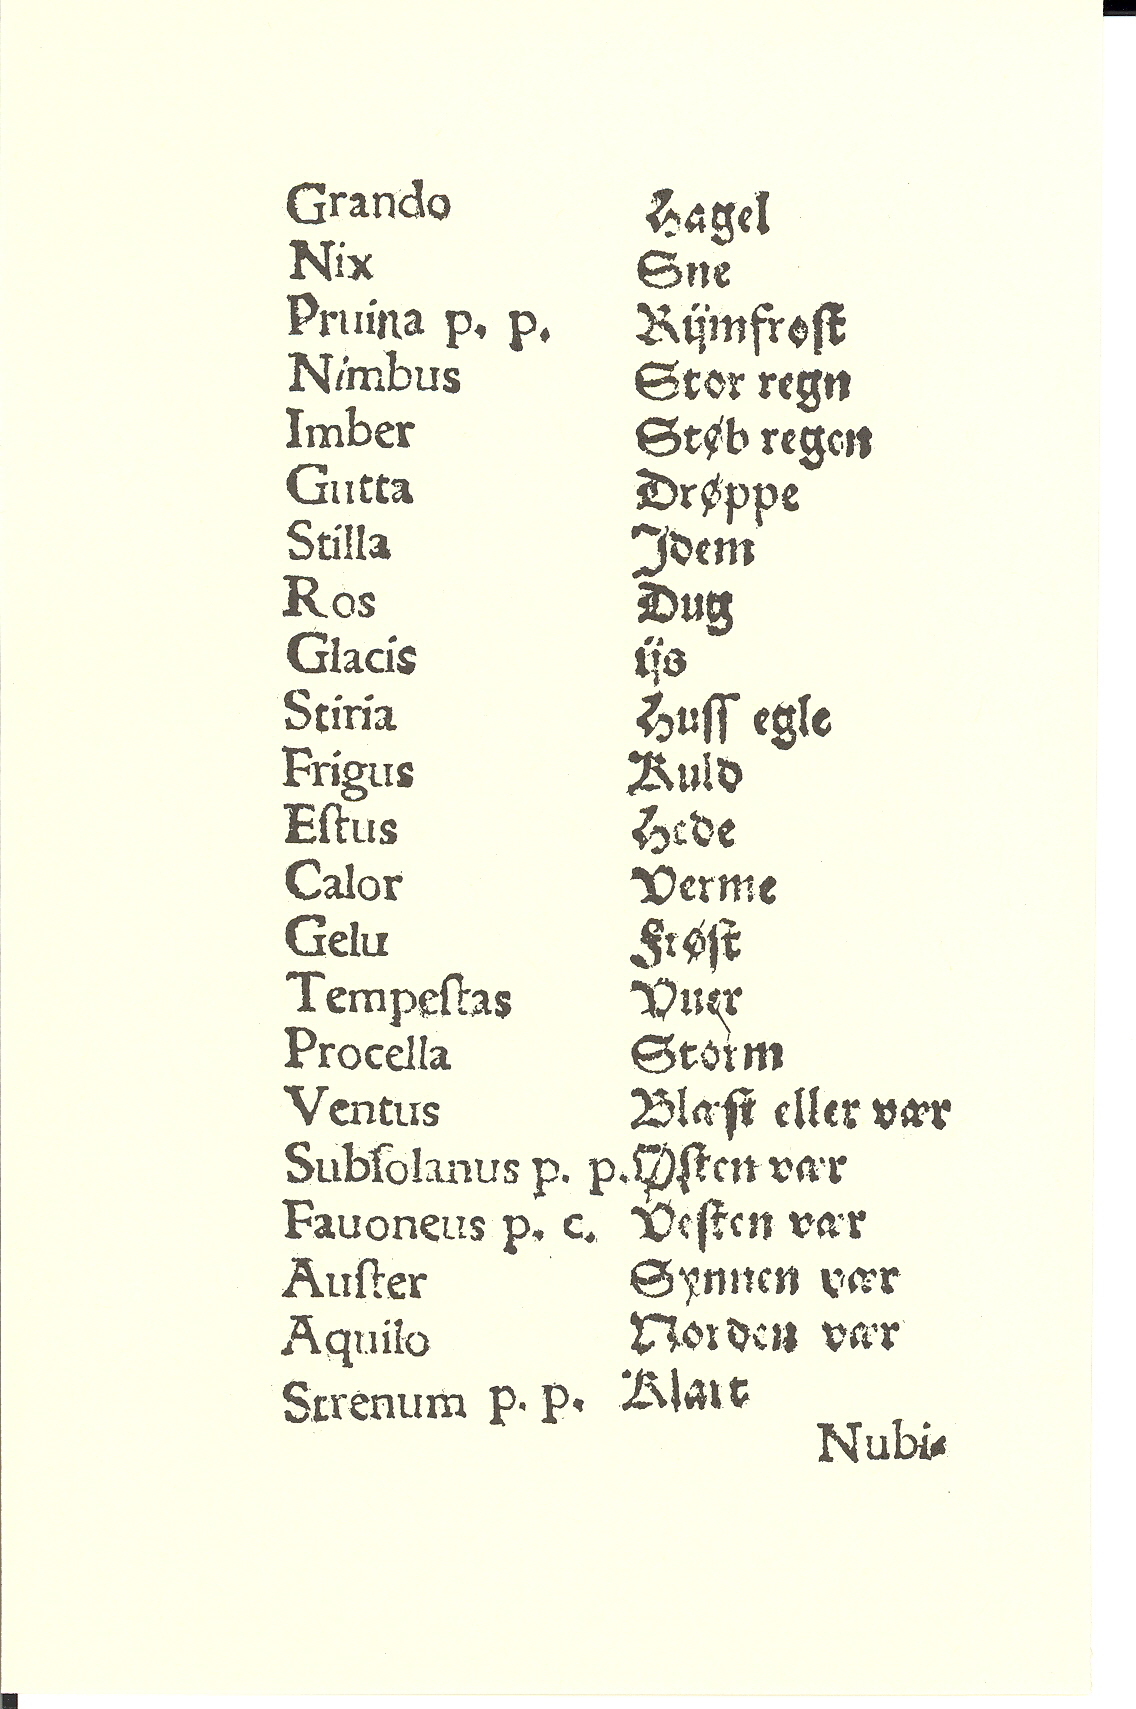 Hingelberg 1576, Side: 4